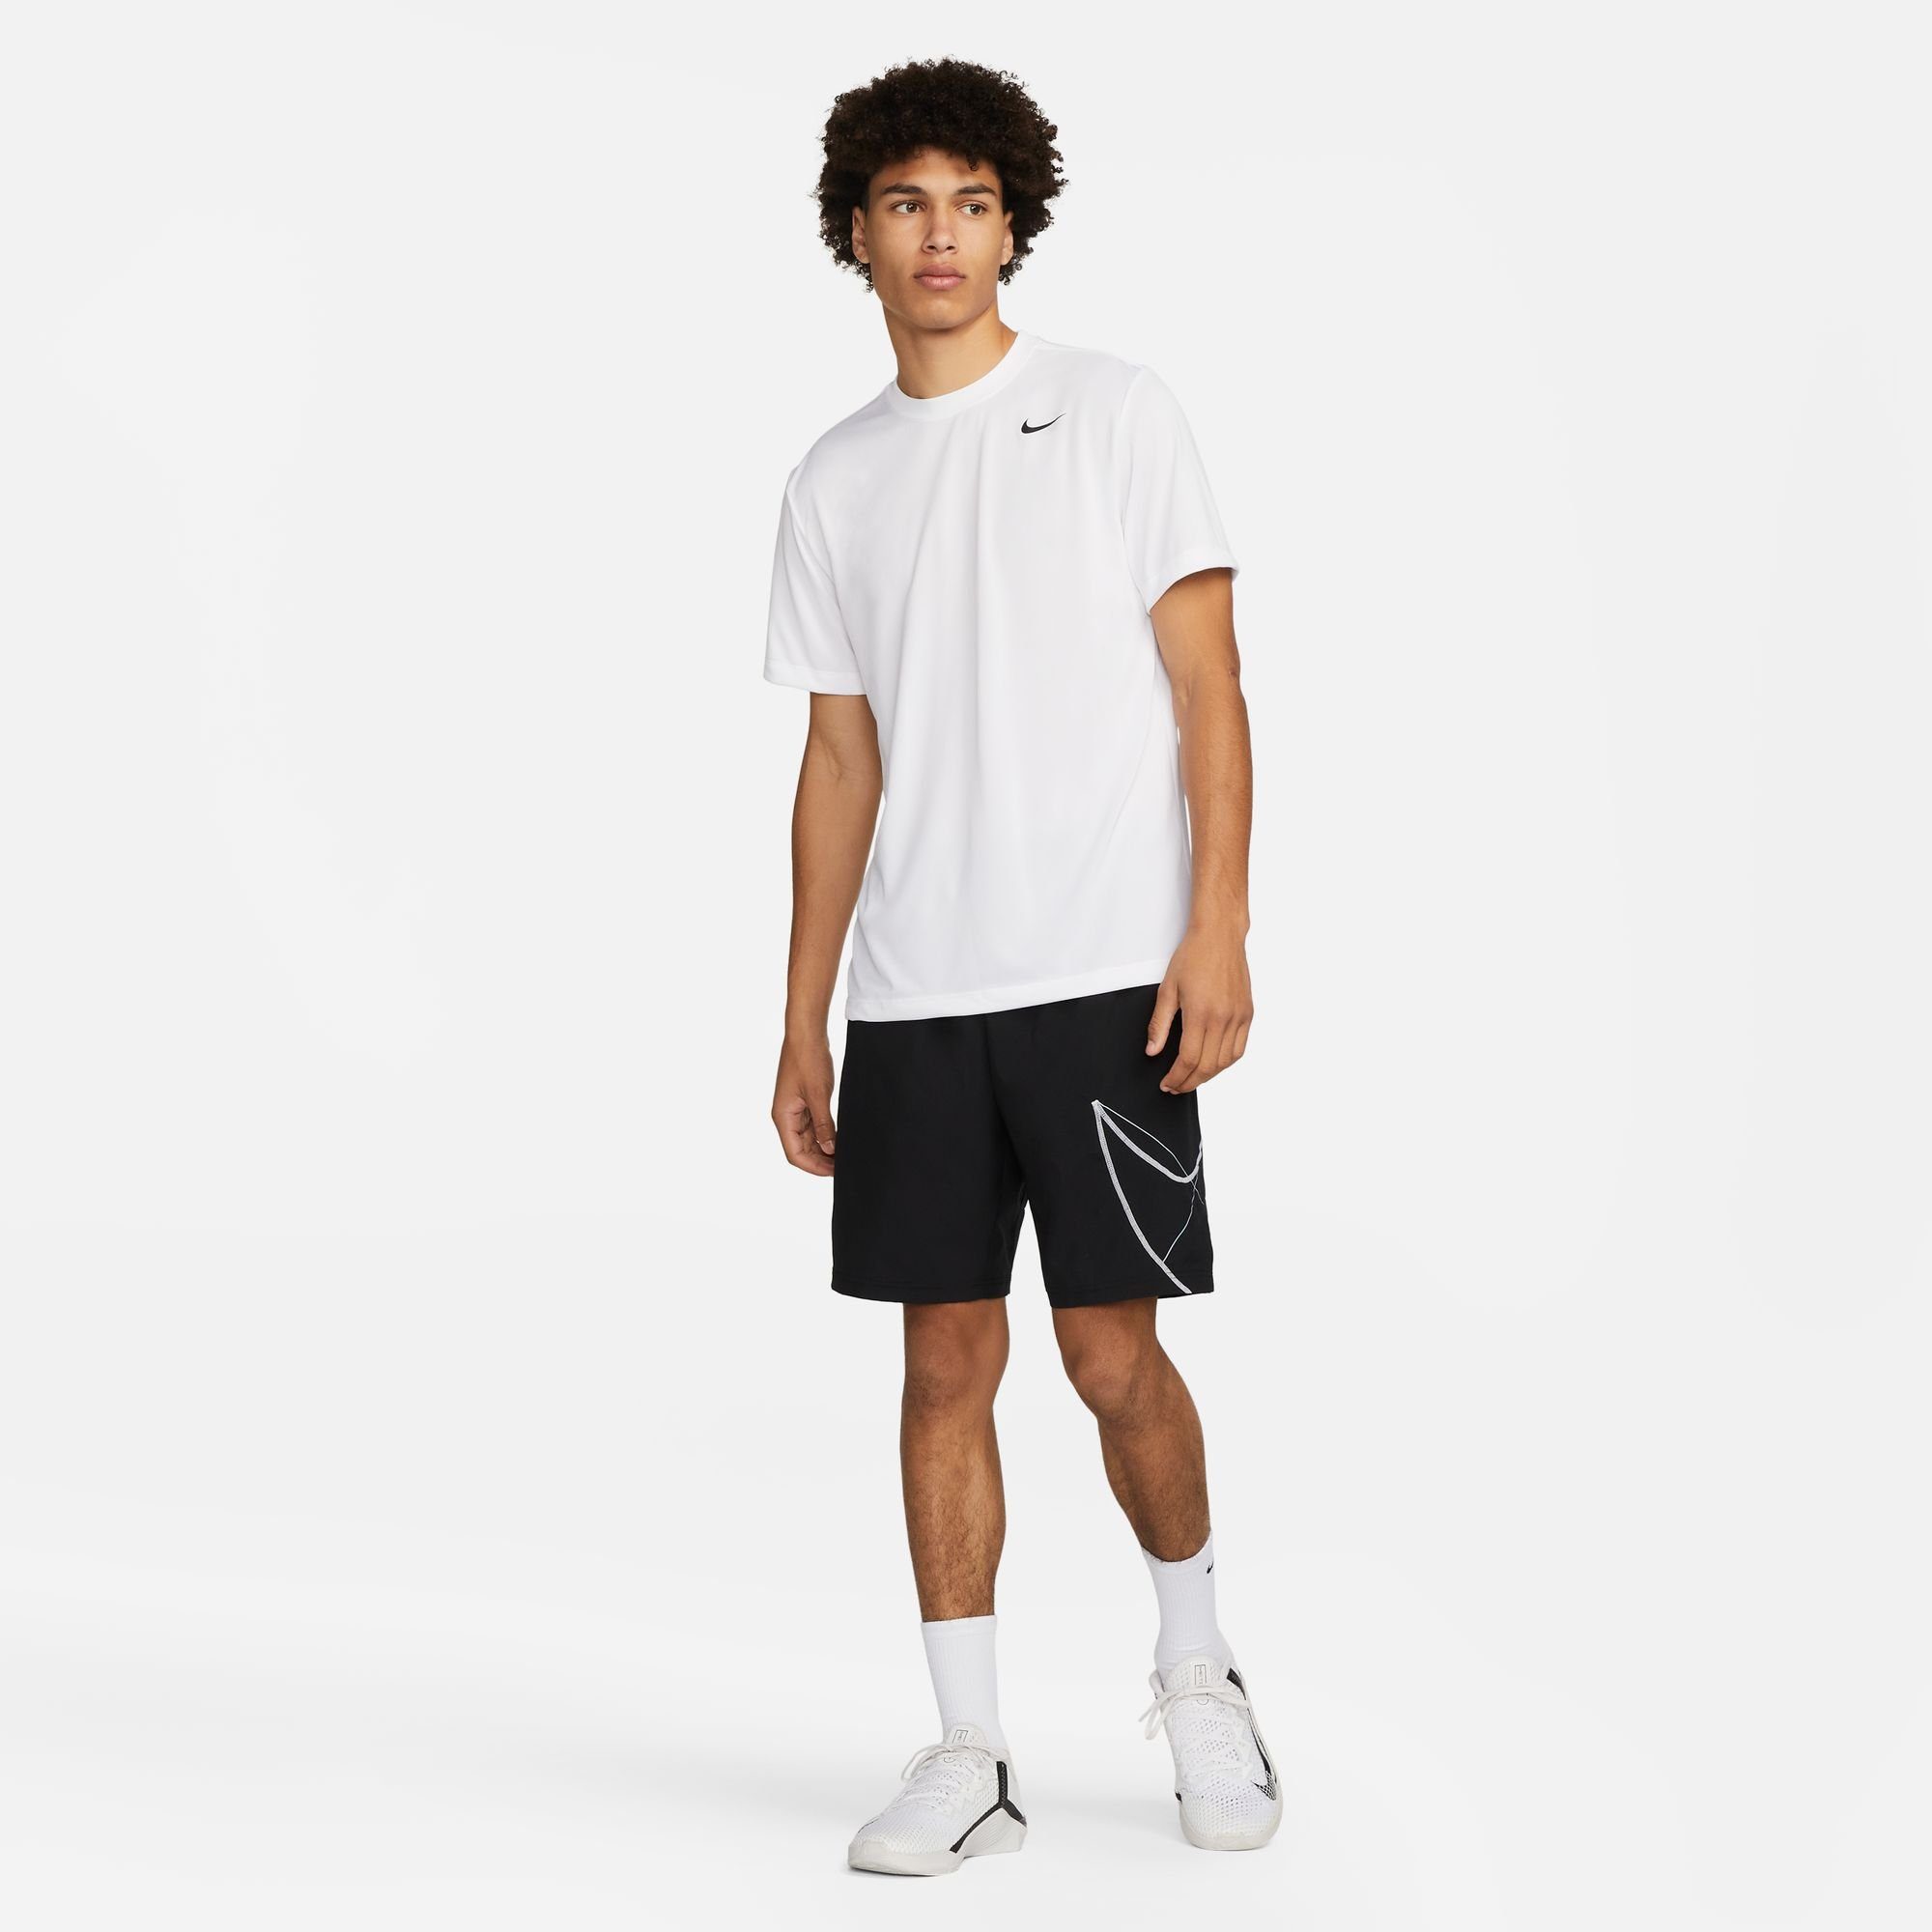 Nike FITNESS WHITE/BLACK MEN'S T-SHIRT Trainingsshirt LEGEND DRI-FIT